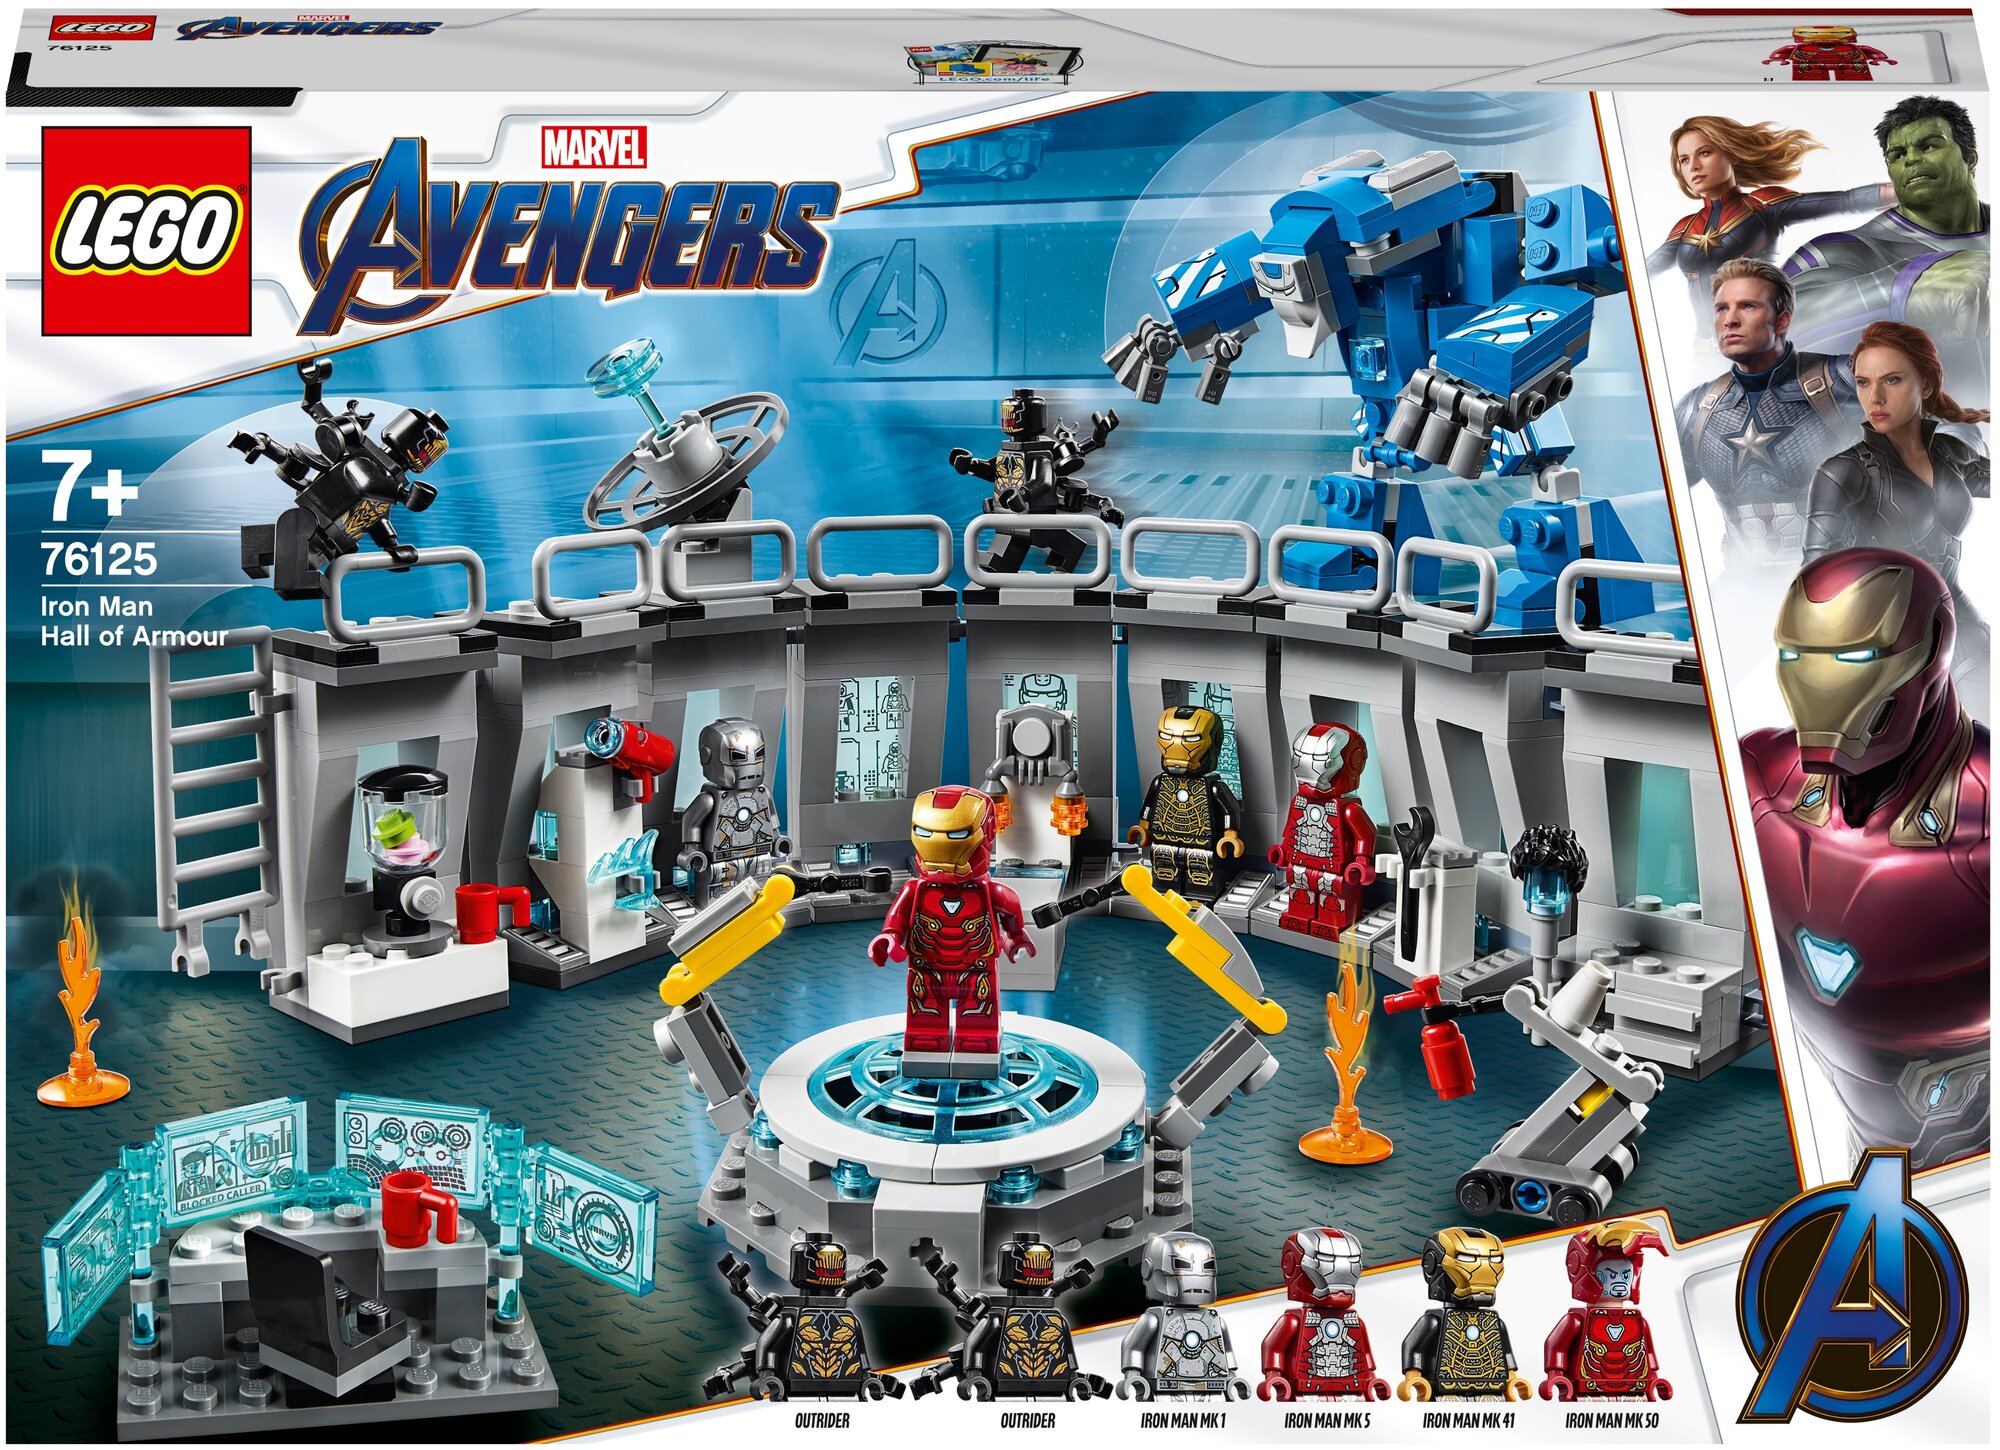 Конструктор LEGO Marvel Super Heroes 76125 Avengers Лаборатория Железного человека, 524 дет.